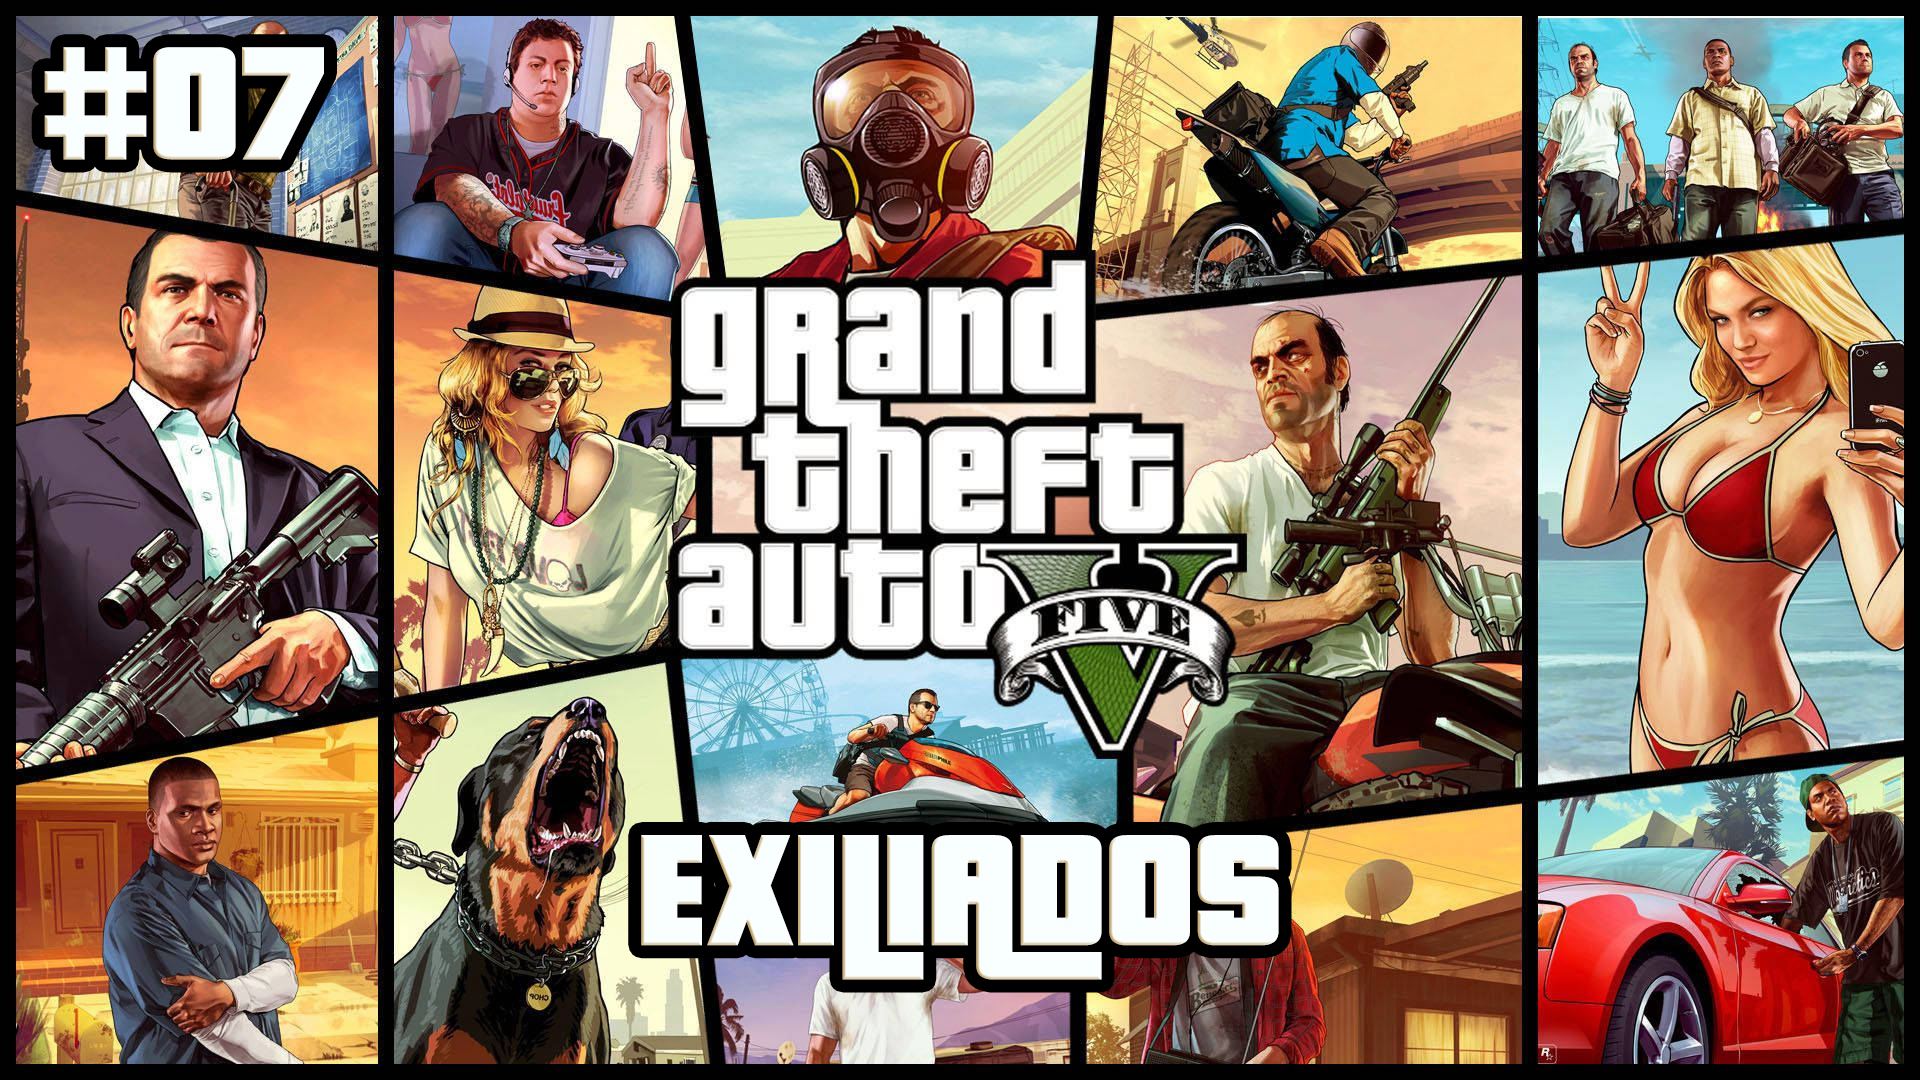 Serie Grand Theft Auto V #7 – Exiliados